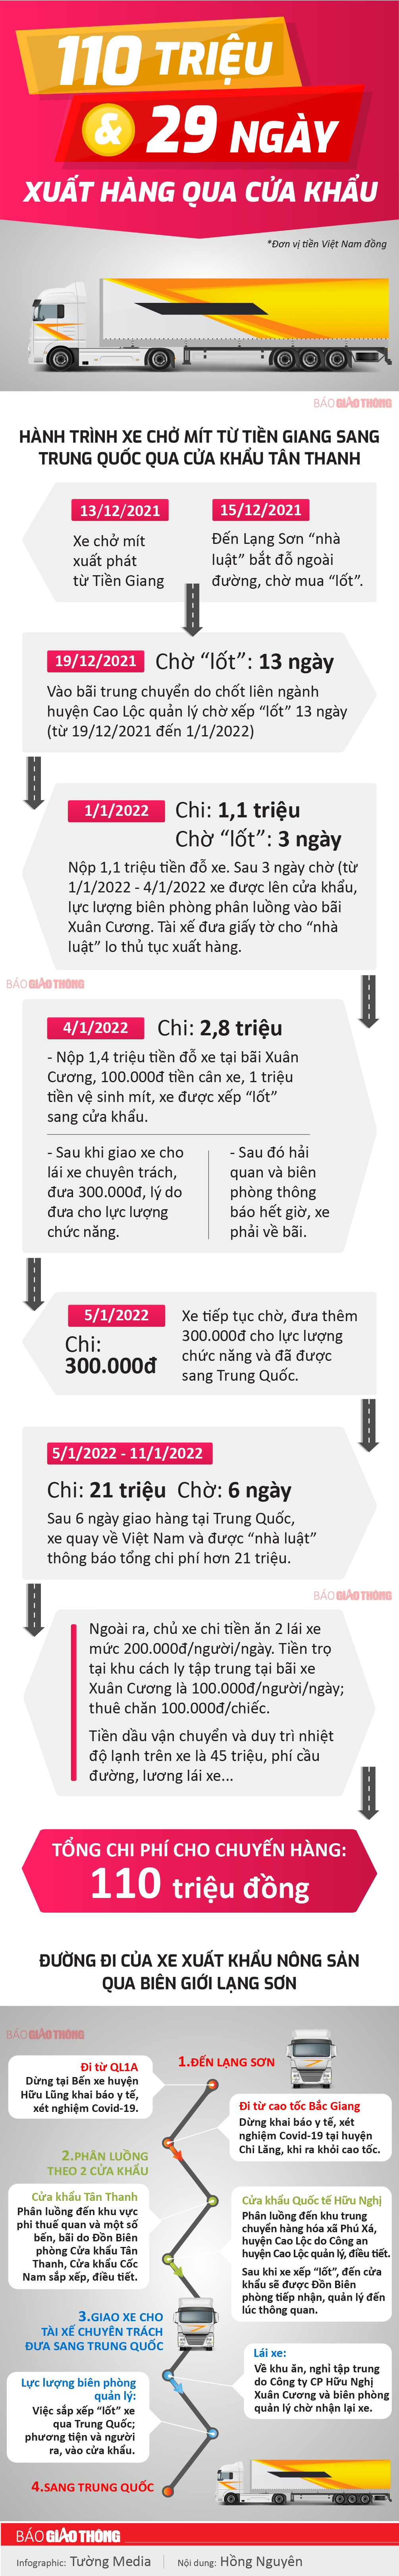 Infographic: Hành trình 29 ngày 1 xe mít qua cửa khẩu, chi phí 110 triệu - 1